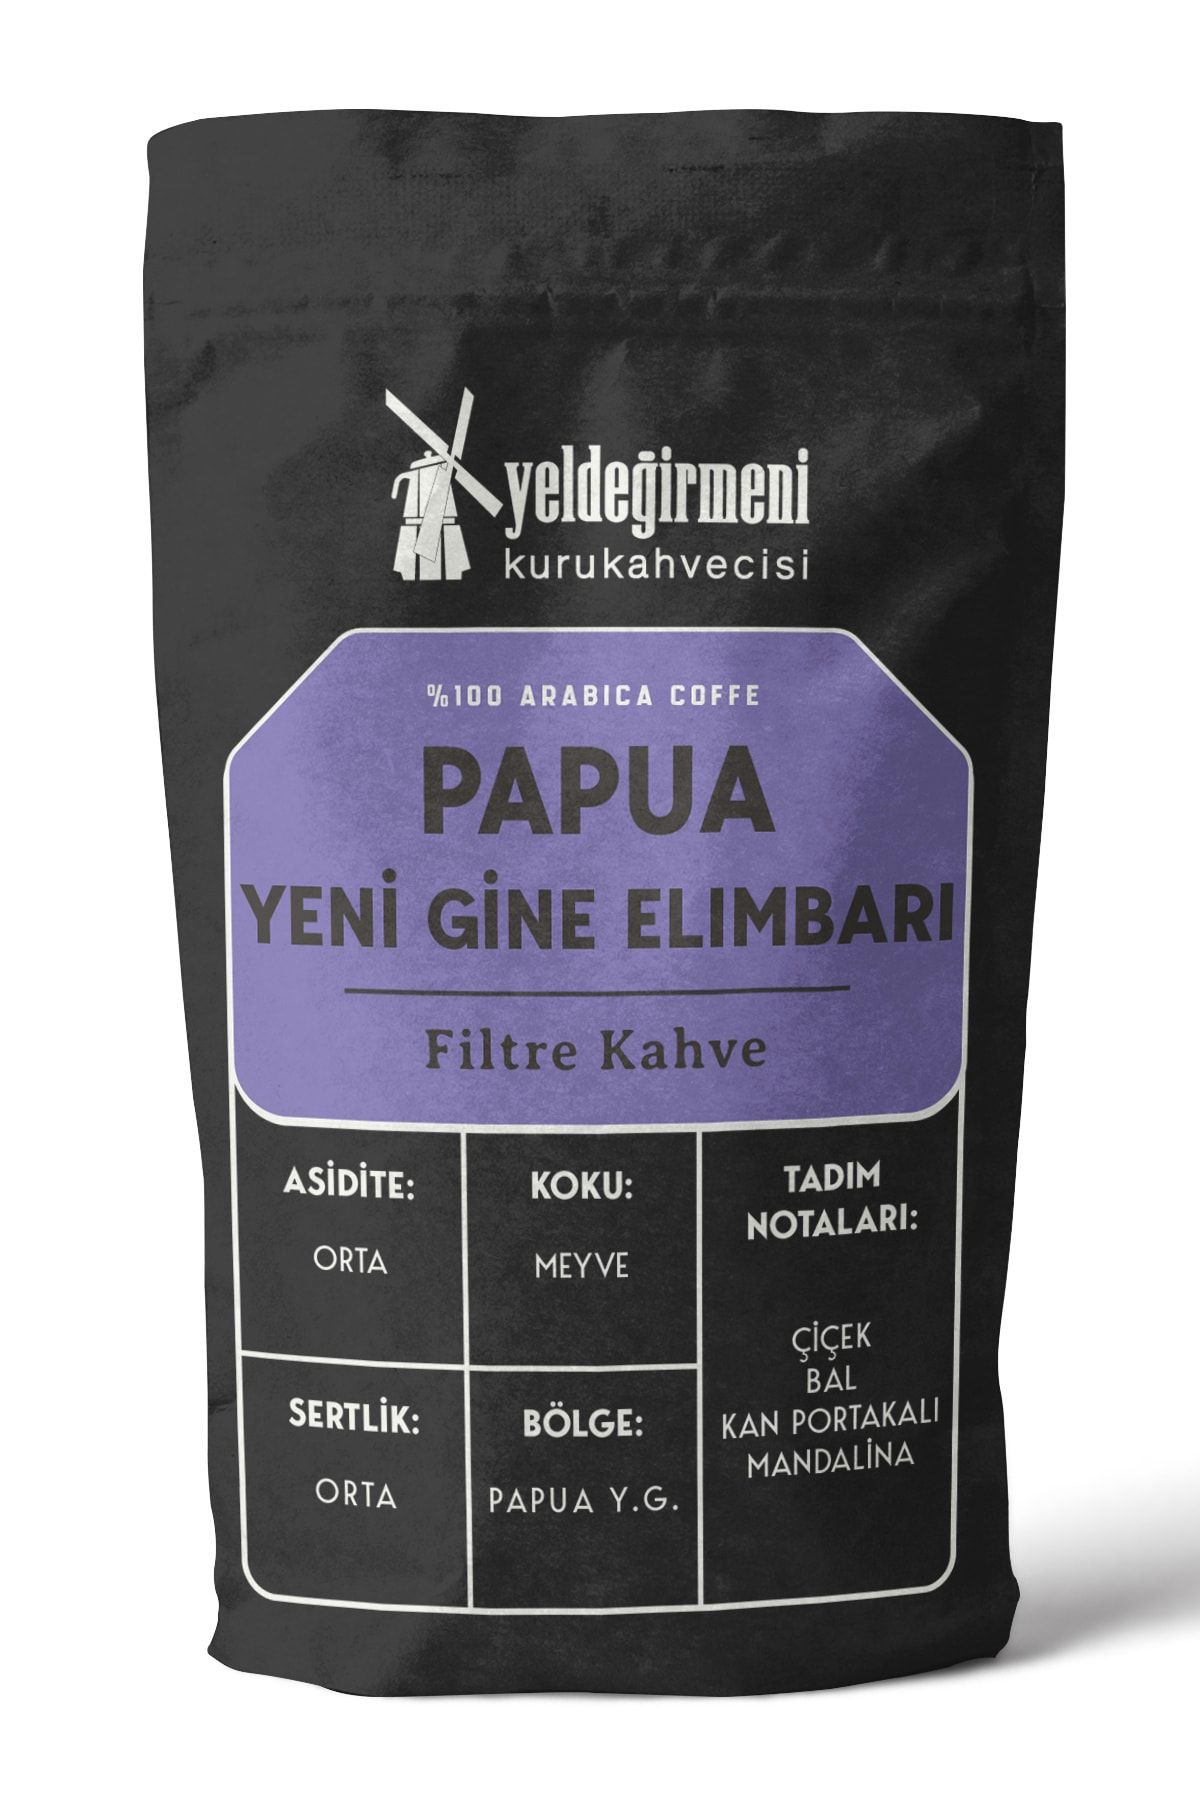 Yeldeğirmeni Kurukahvecisi Papua Yeni Gine Elimbarı Filtre Kahve 1000 gr